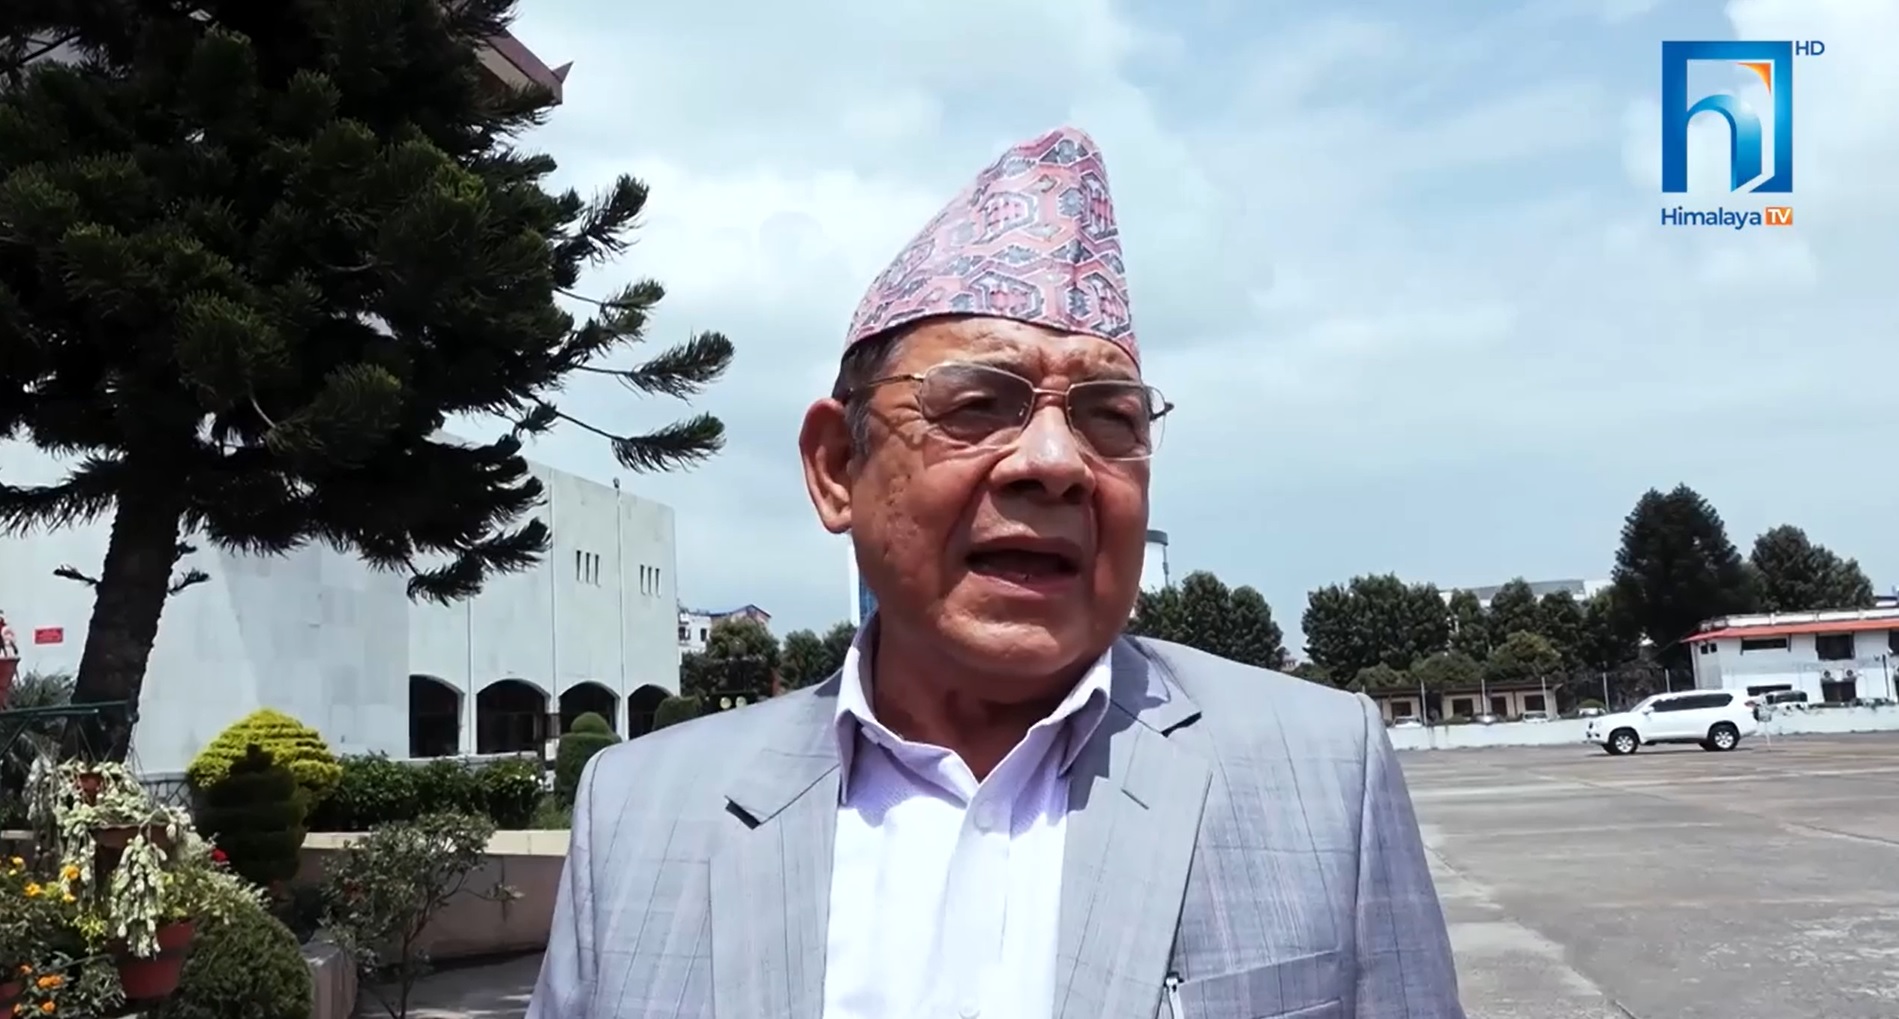 नेपाल र ओलीको रिस शान्त नभएसम्म एमाले एकता सम्भव छैनः उपाध्यक्ष गौतम (भिडियो रिपोर्टसहित)